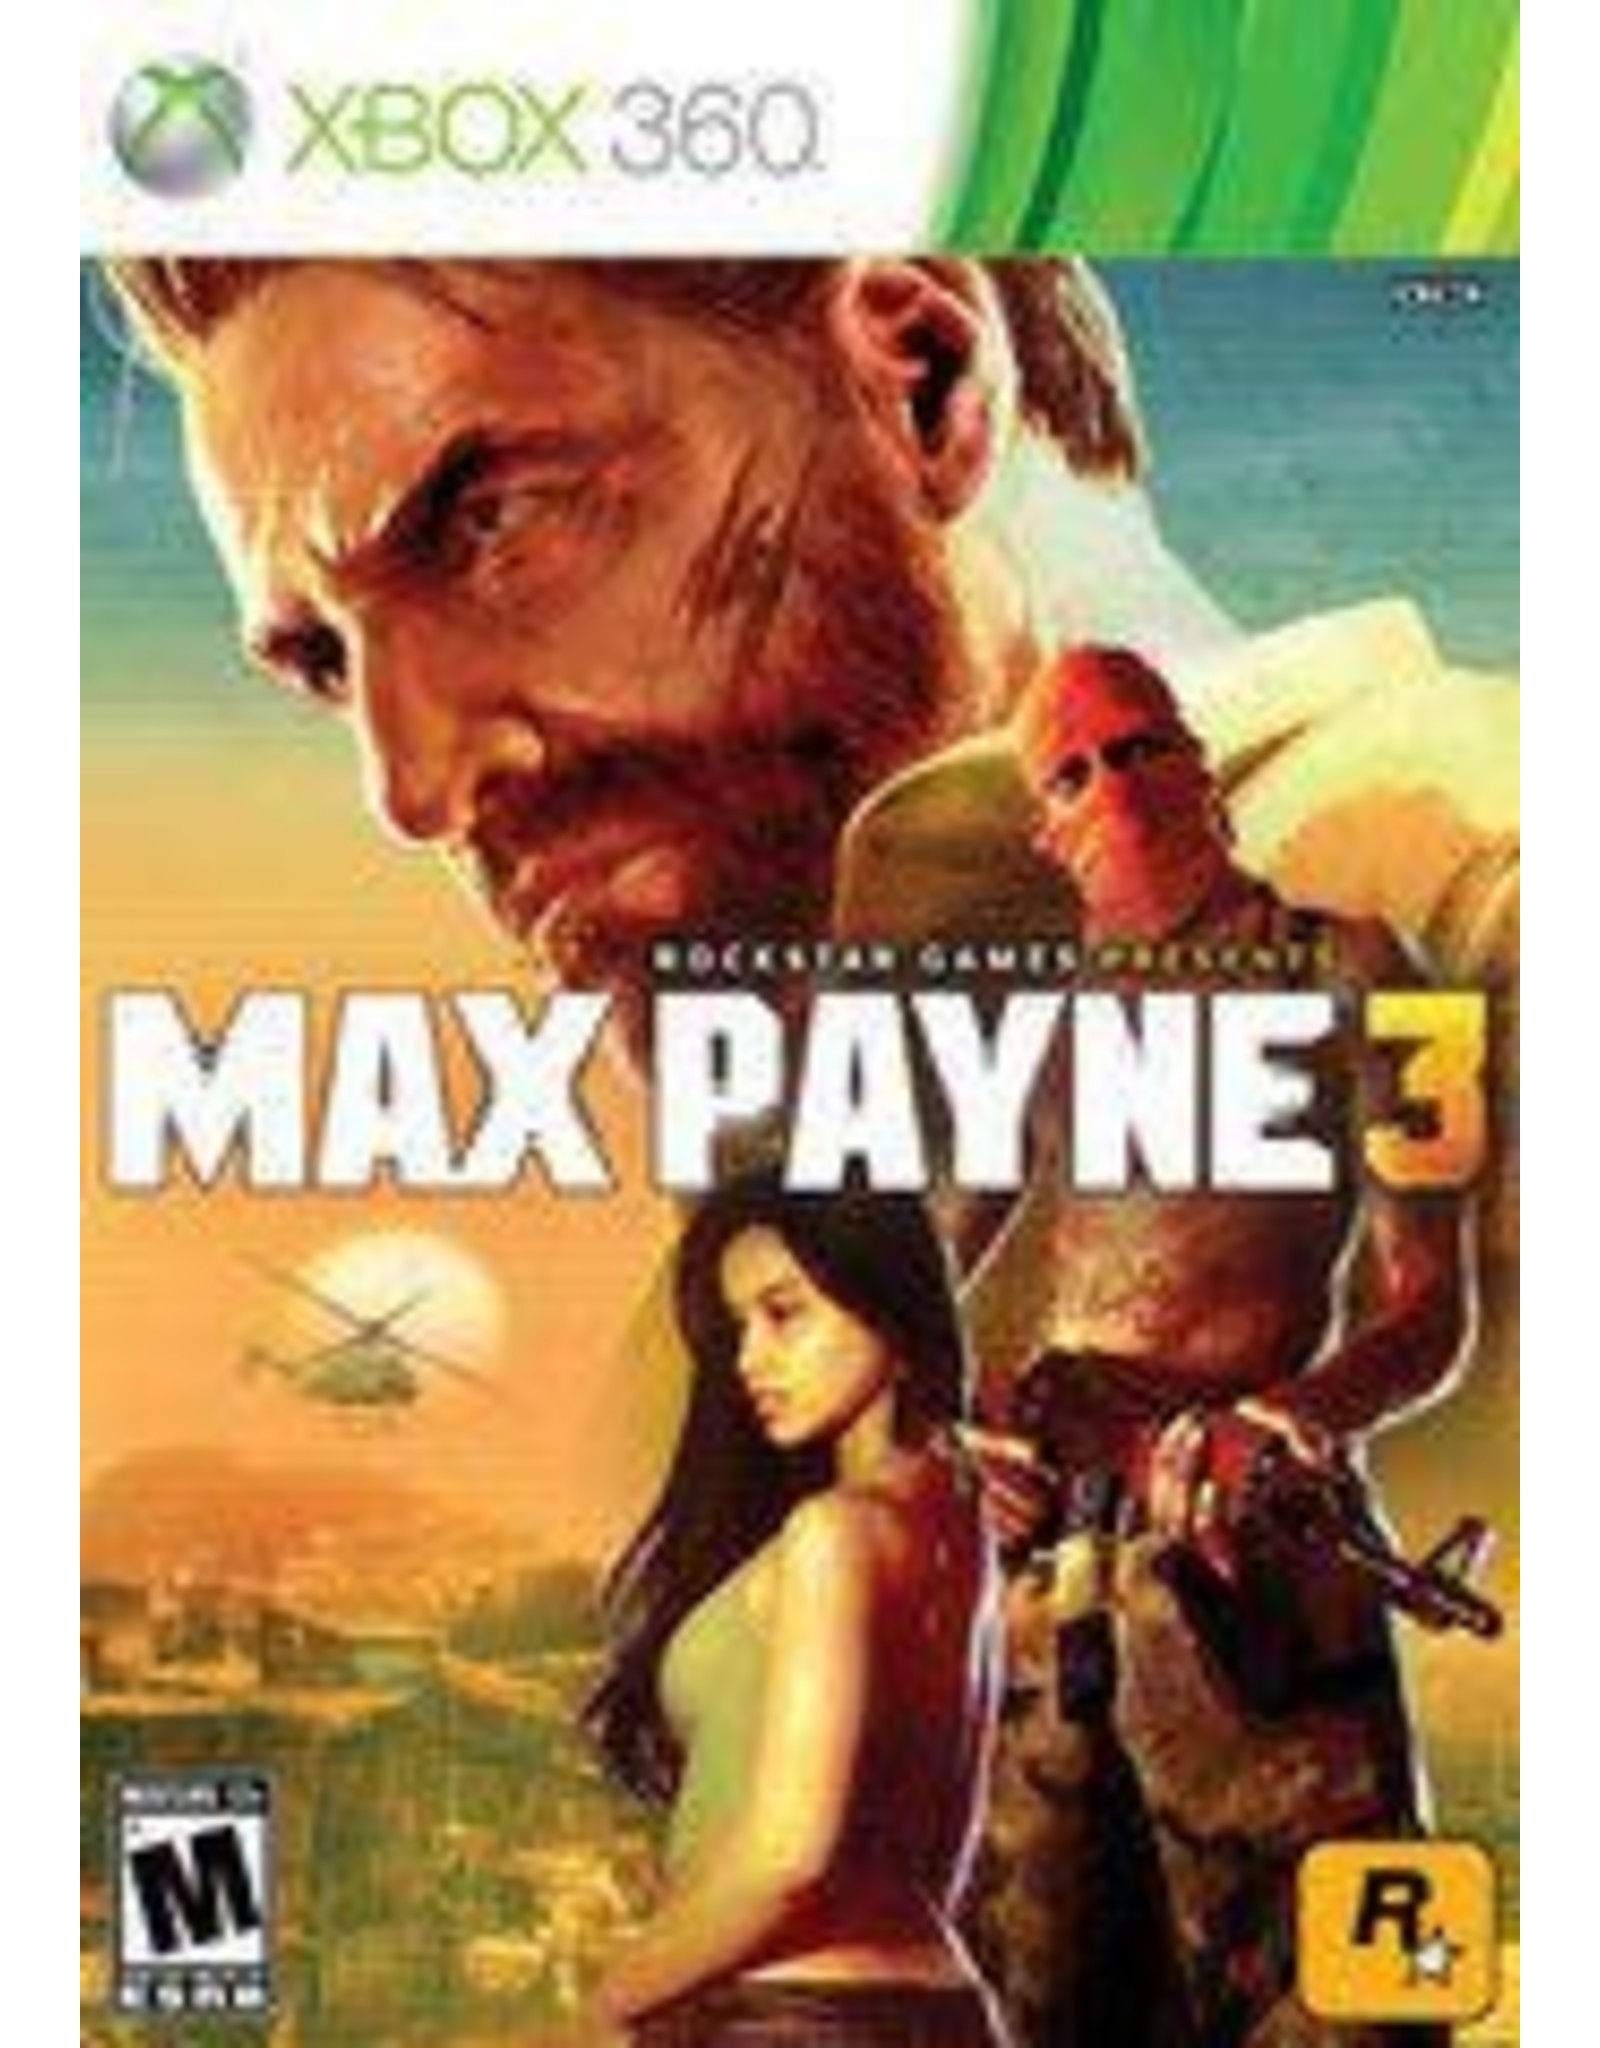 Xbox 360 Max Payne 3 (CiB)